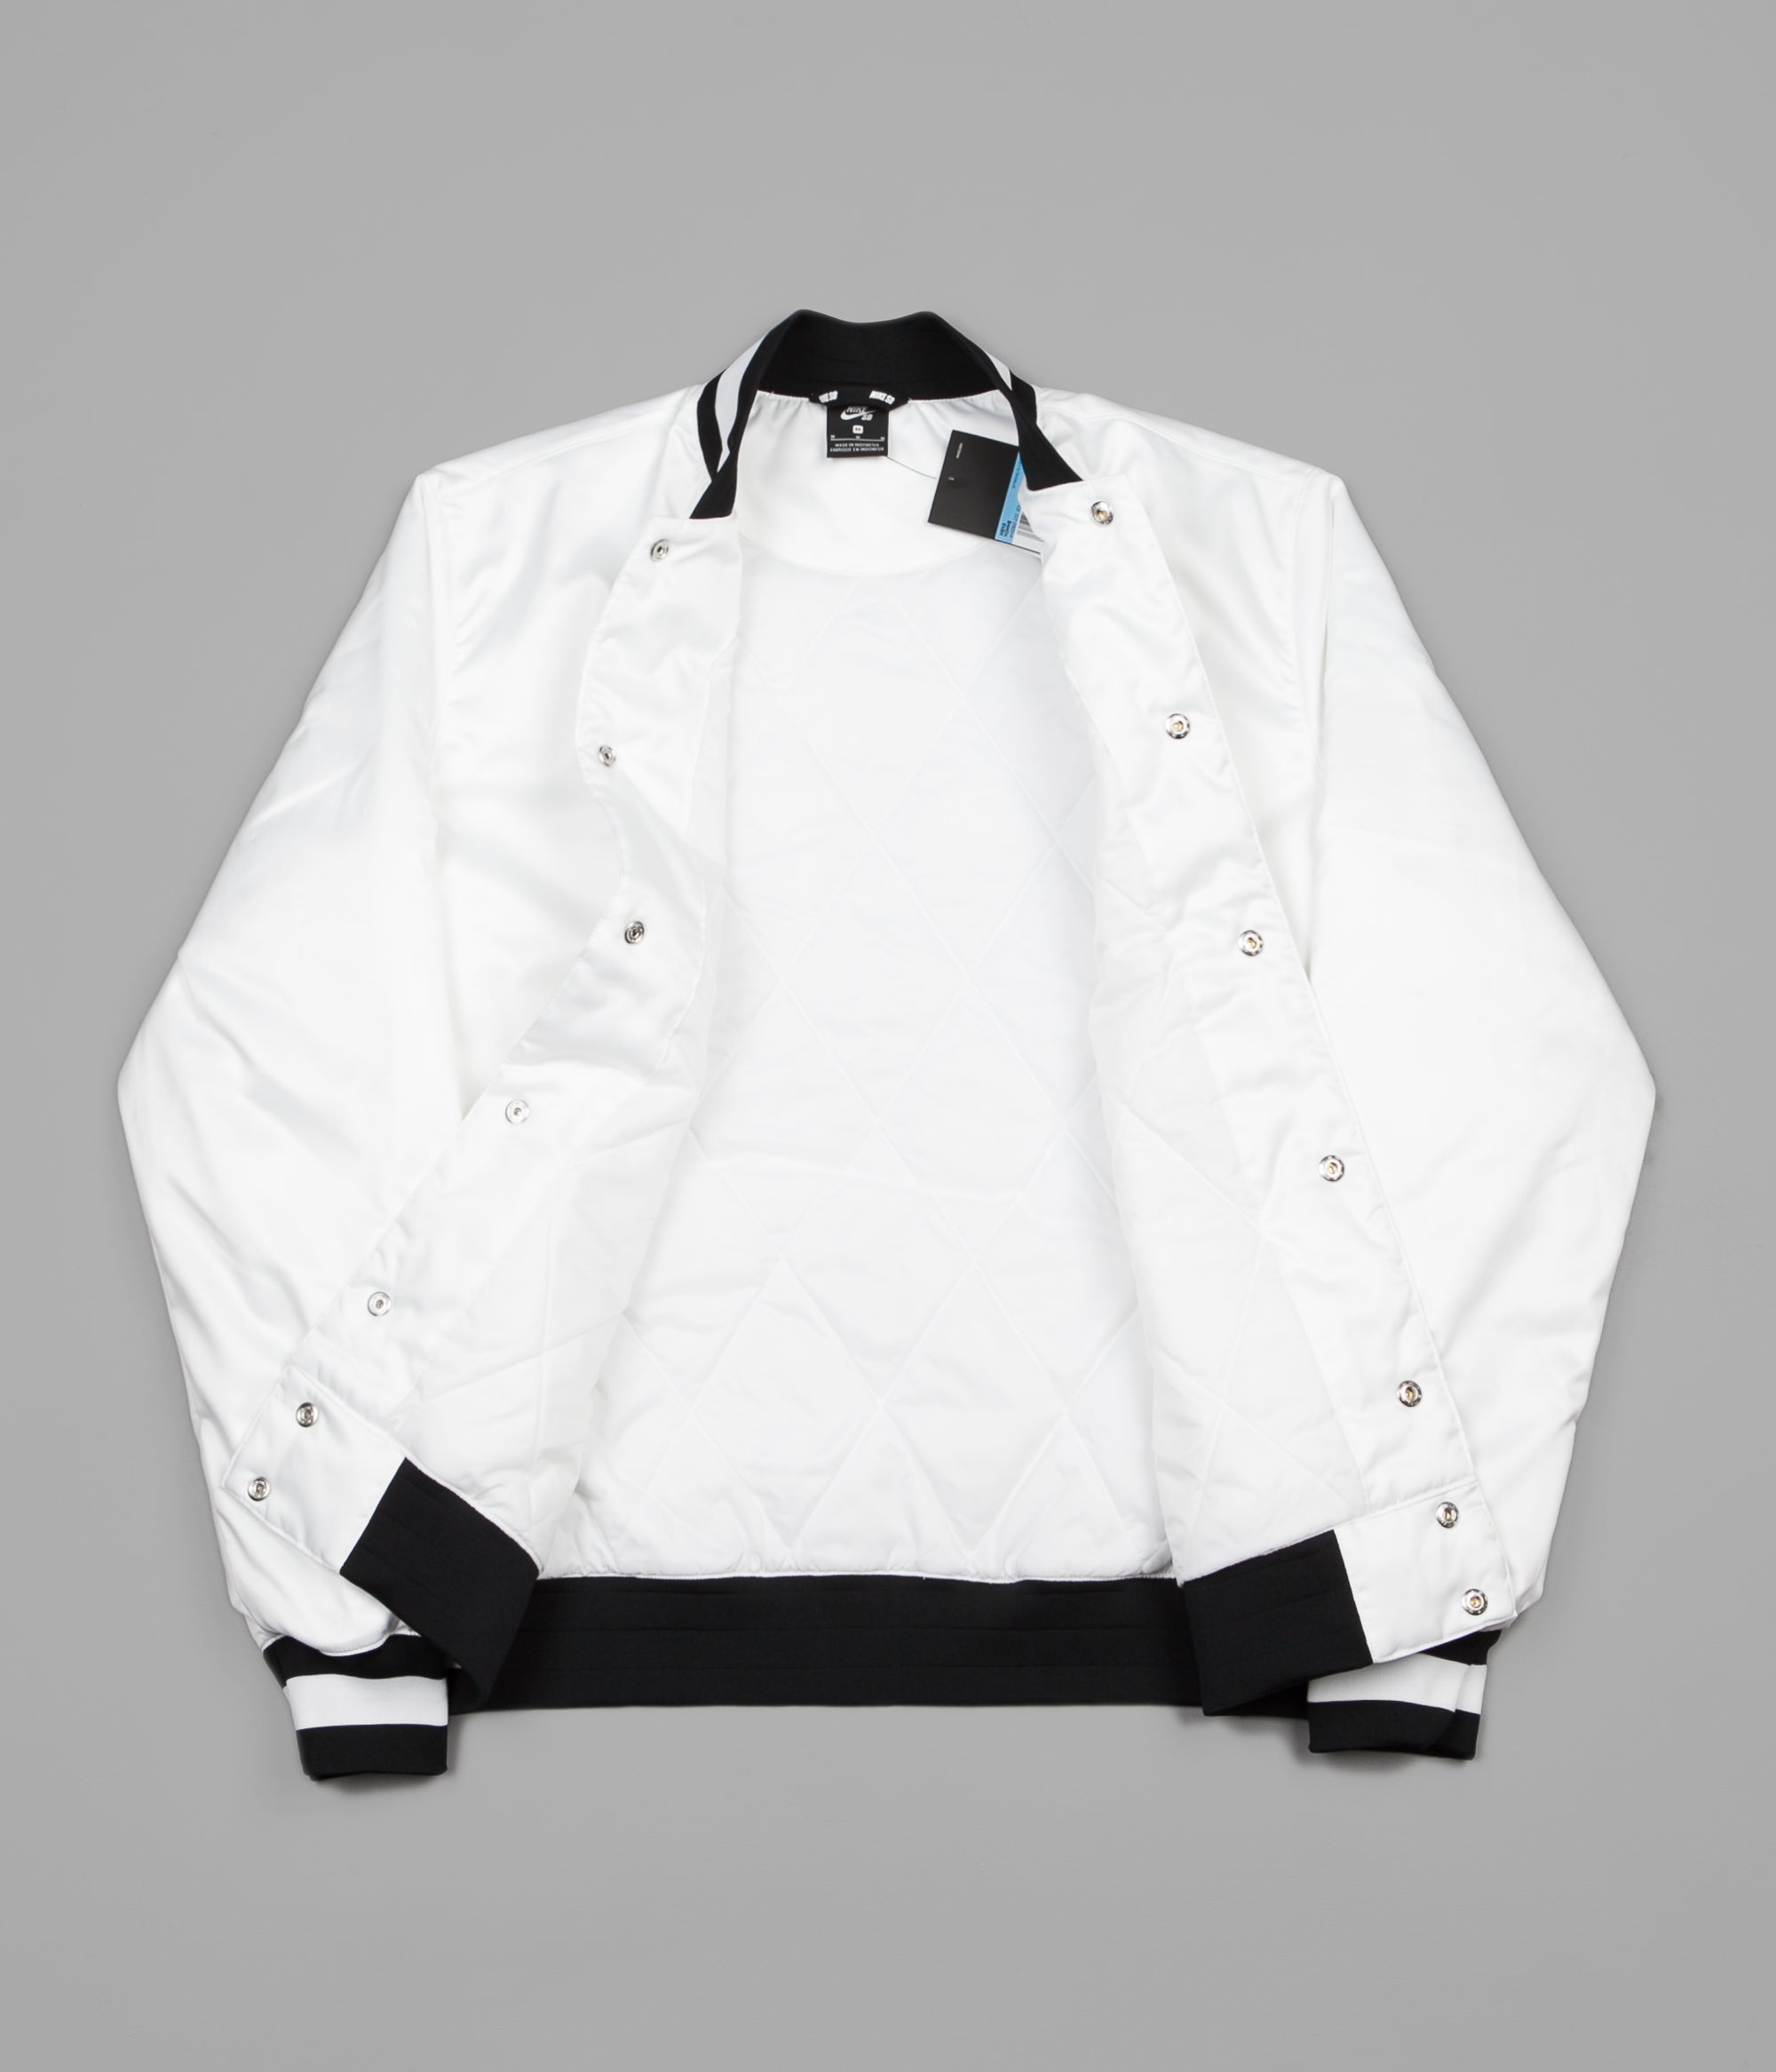 nike bomber jacket white